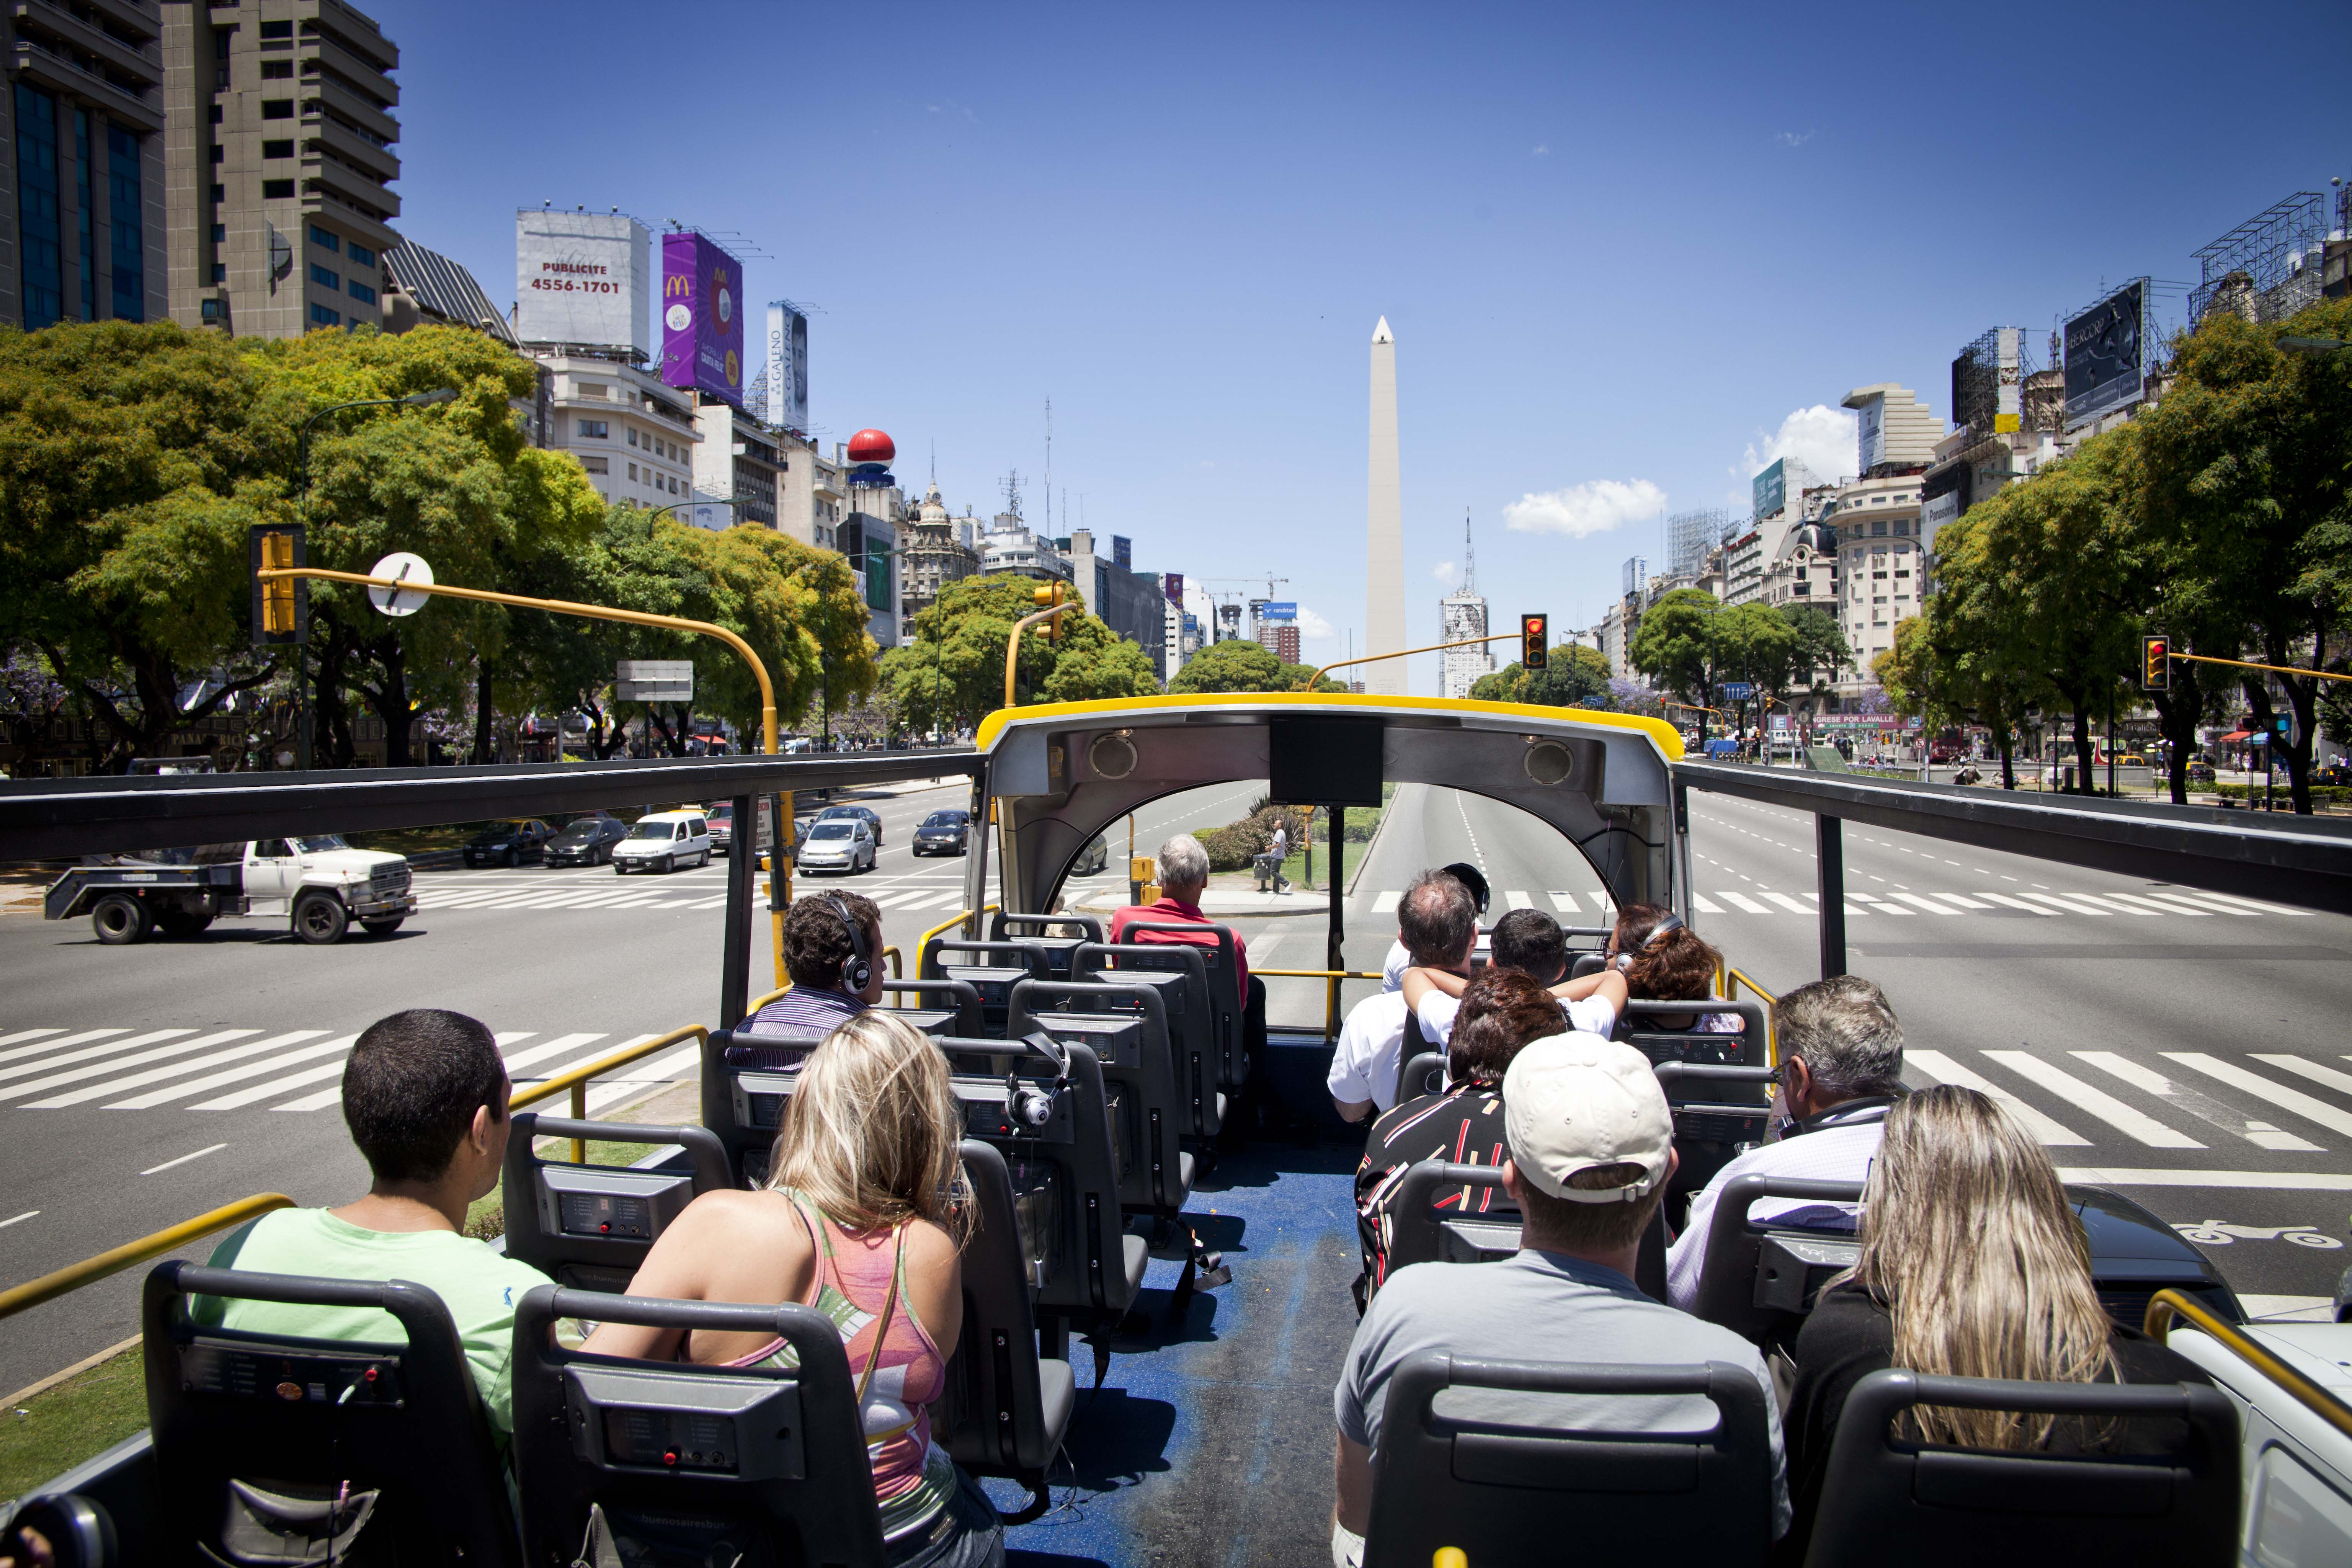 Bus Turístico, una buena opción para recorrer Buenos Aires